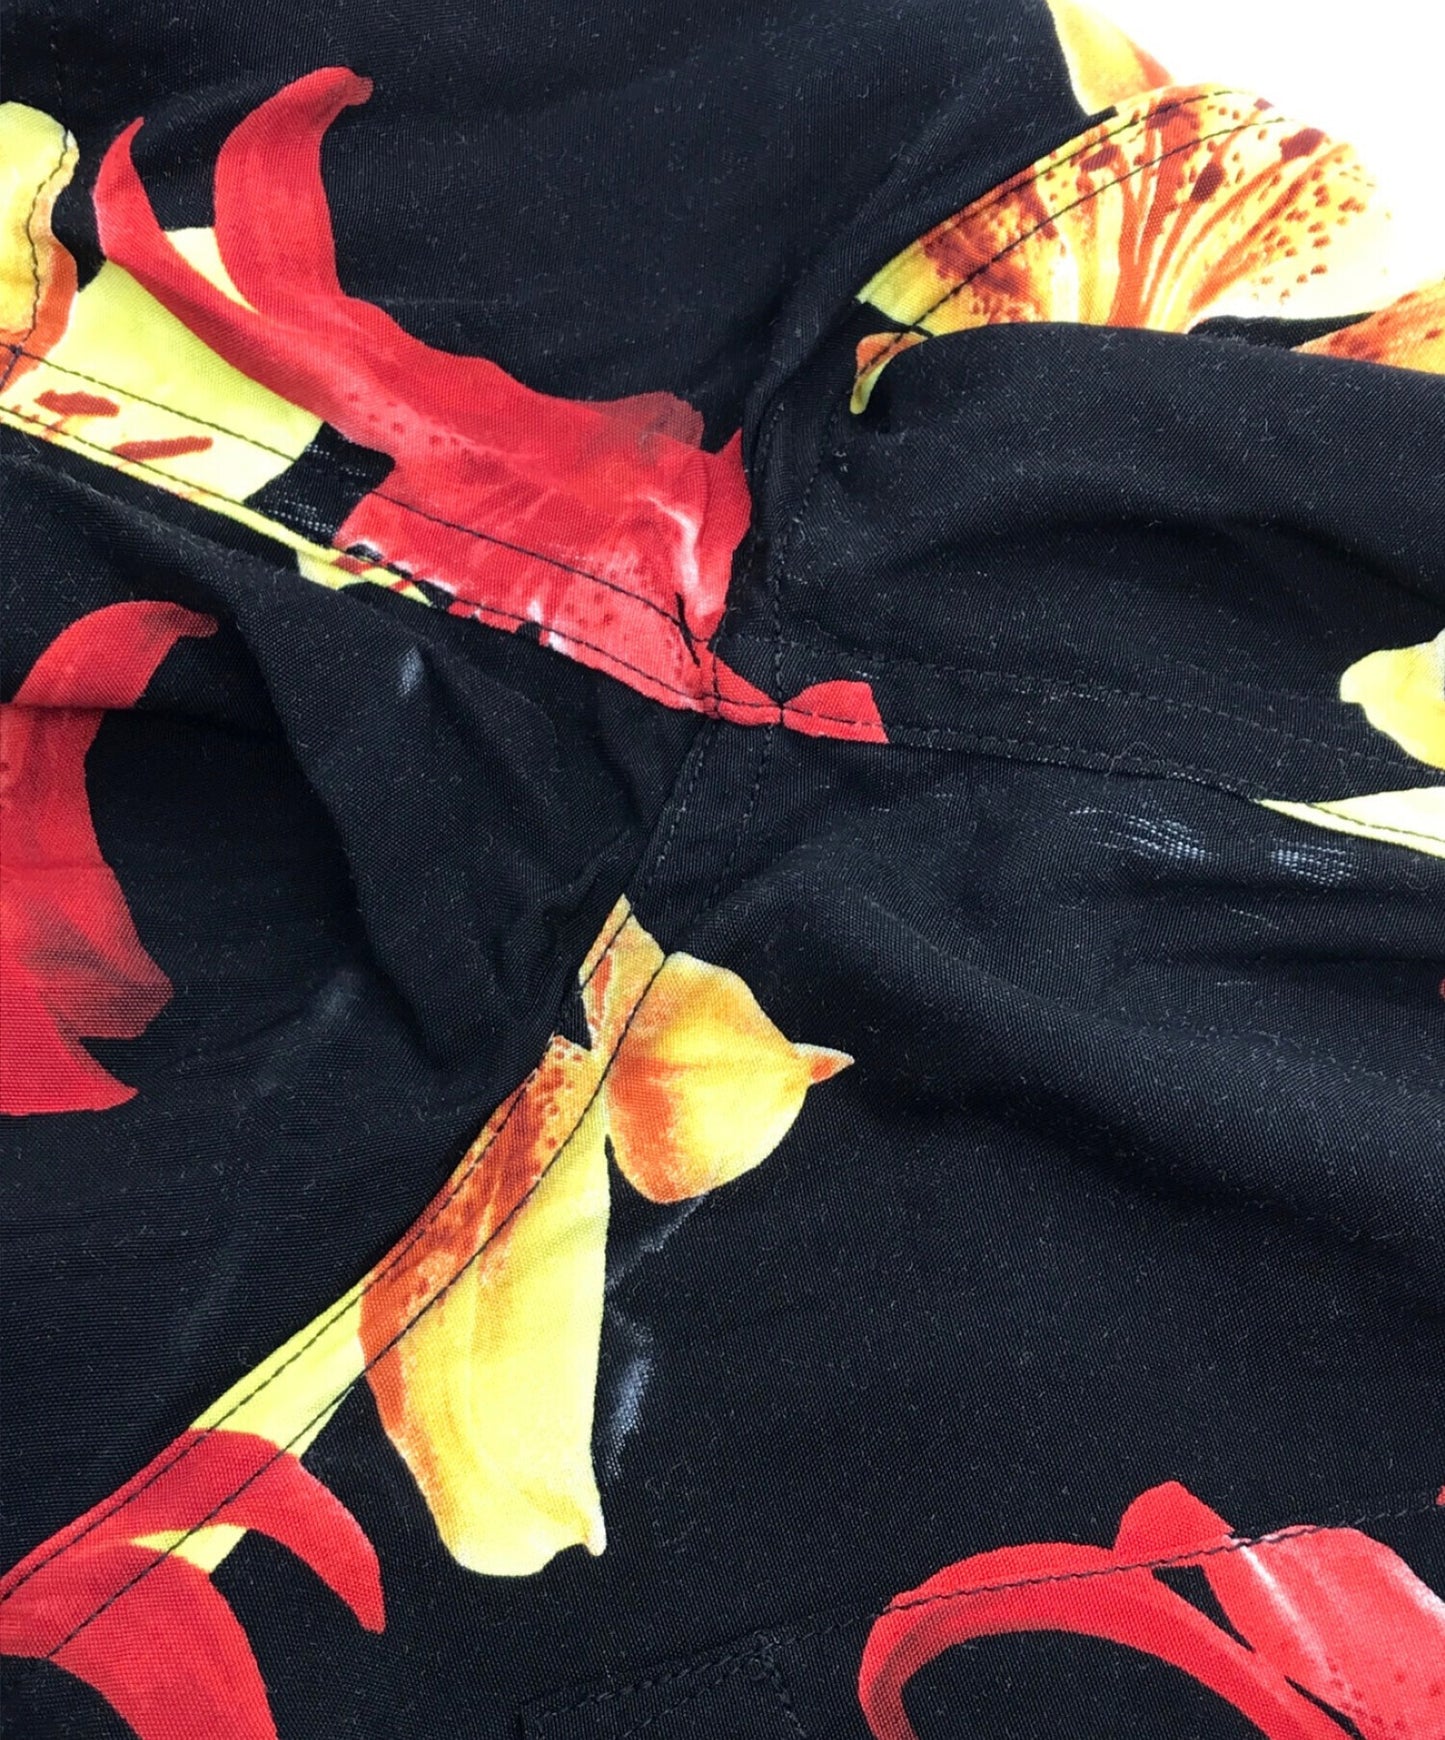 [Pre-owned] WACKO MARIA HAWAIIAN SHIRT S/S/Hibiscus Hawaiian shirt